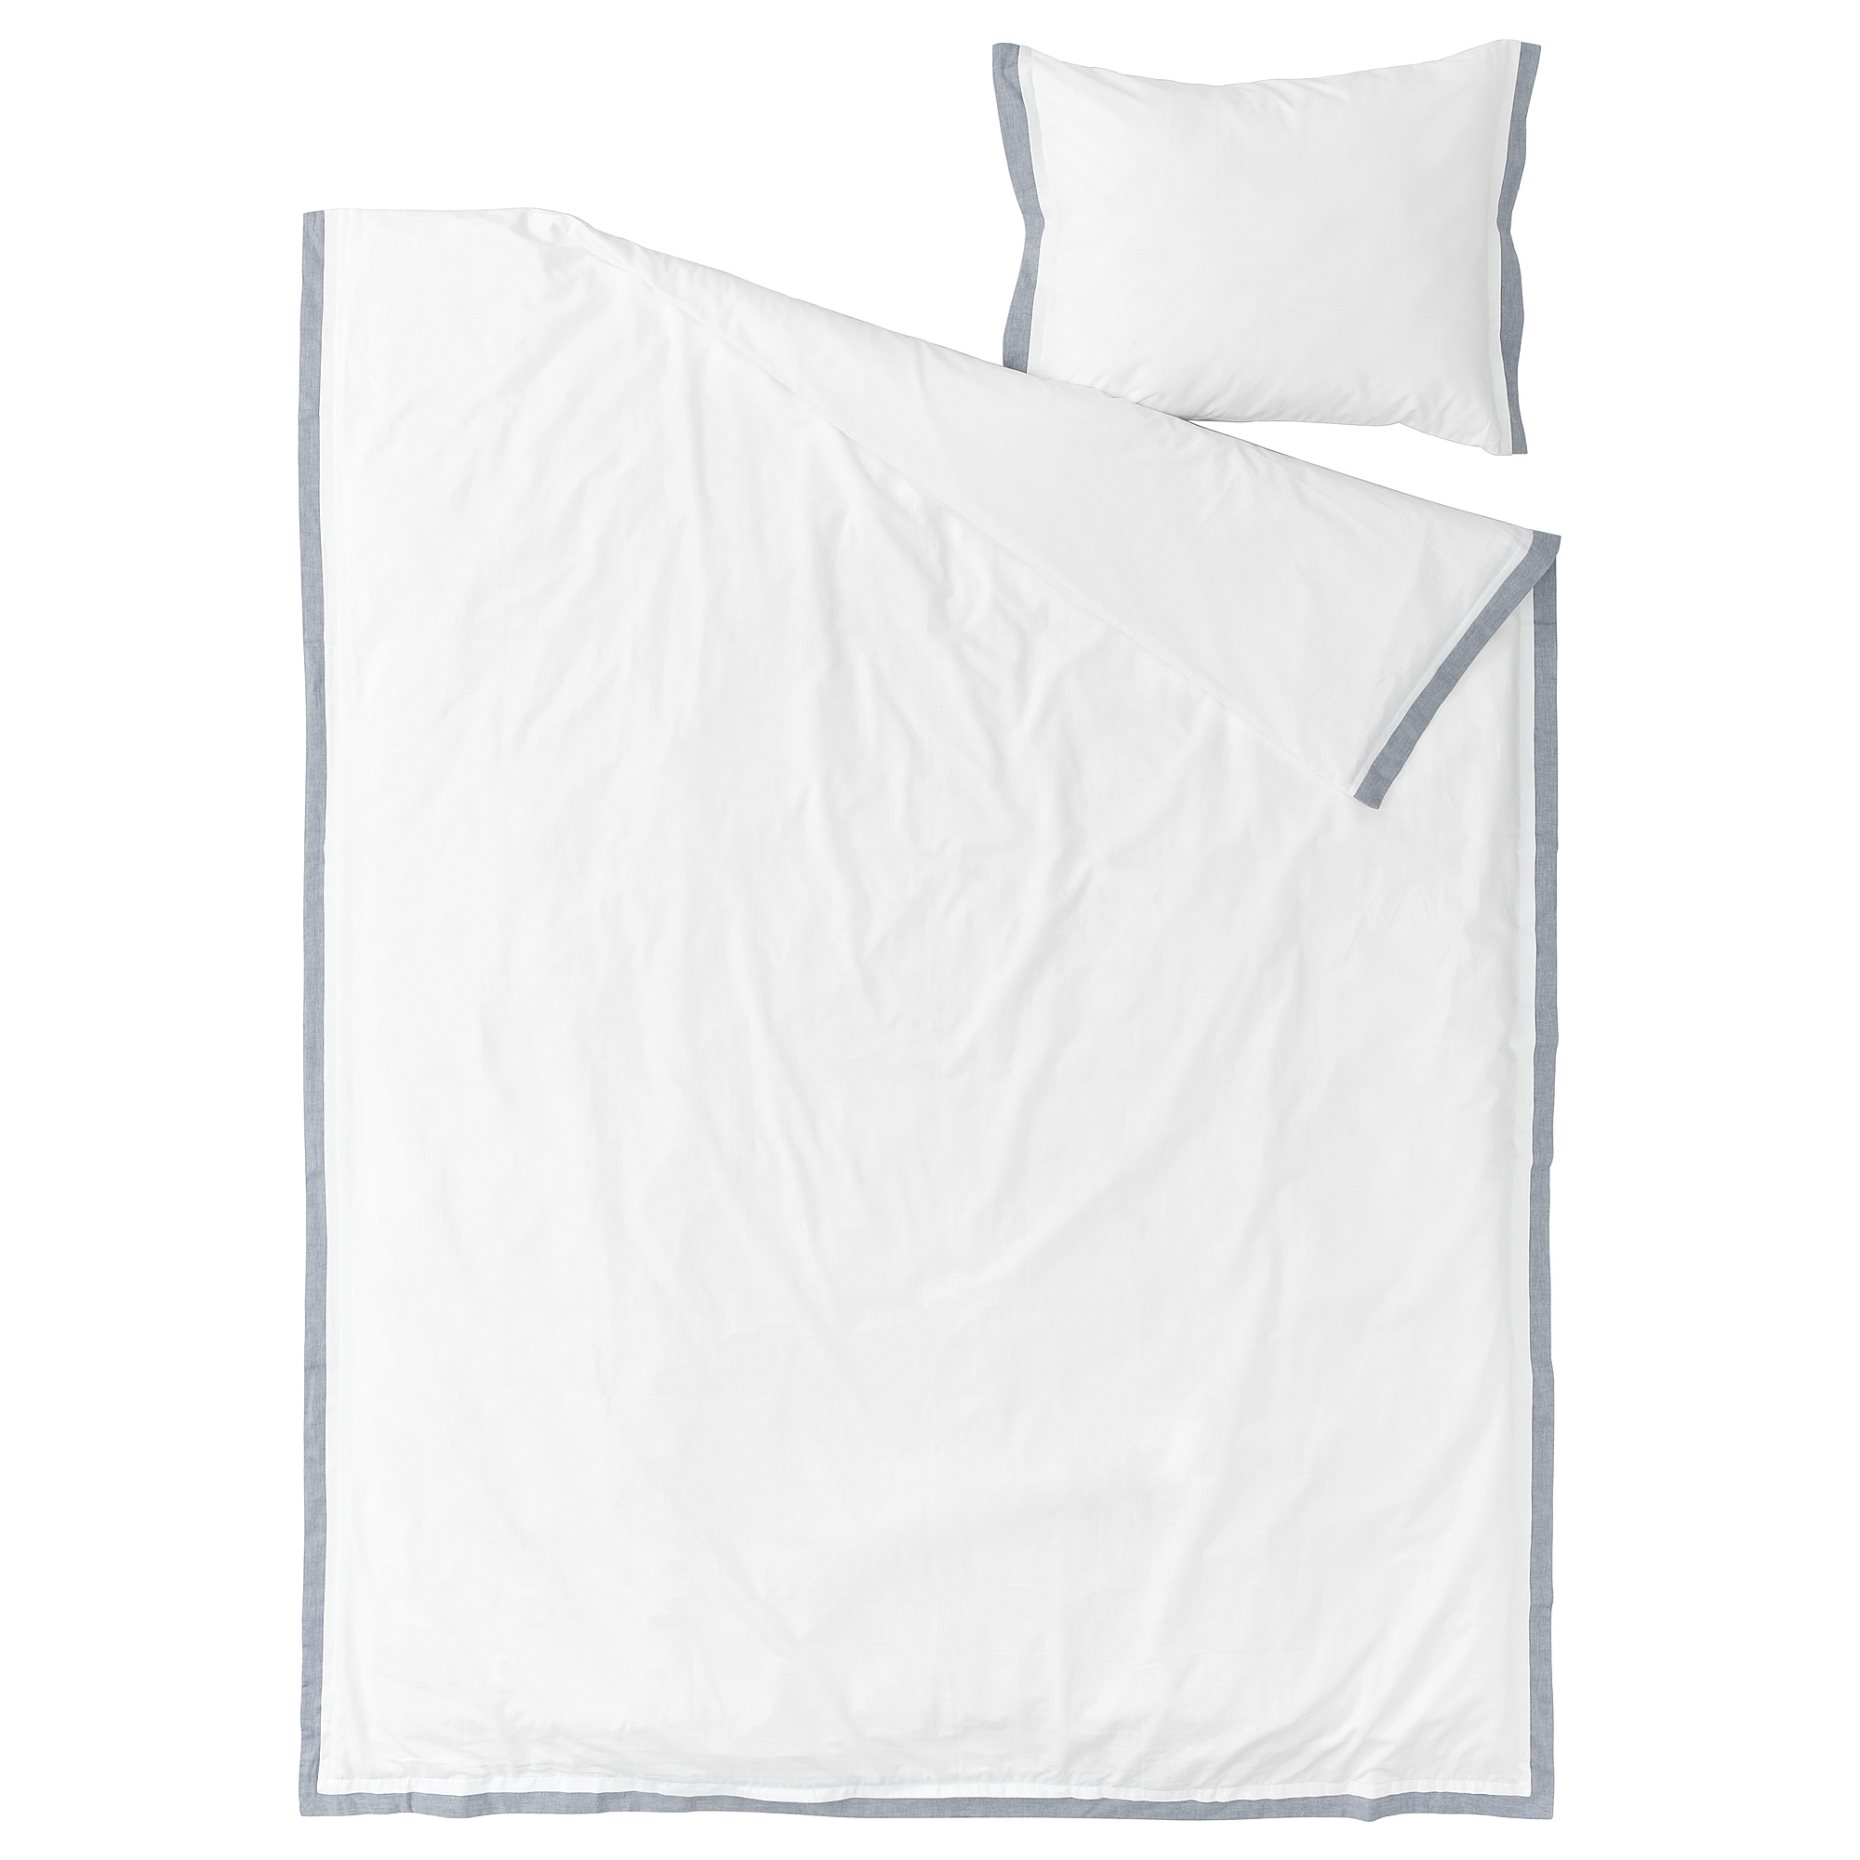 TÅTELSMYGARE, duvet cover and pillowcase, 150x200/50x60 cm, 605.547.85